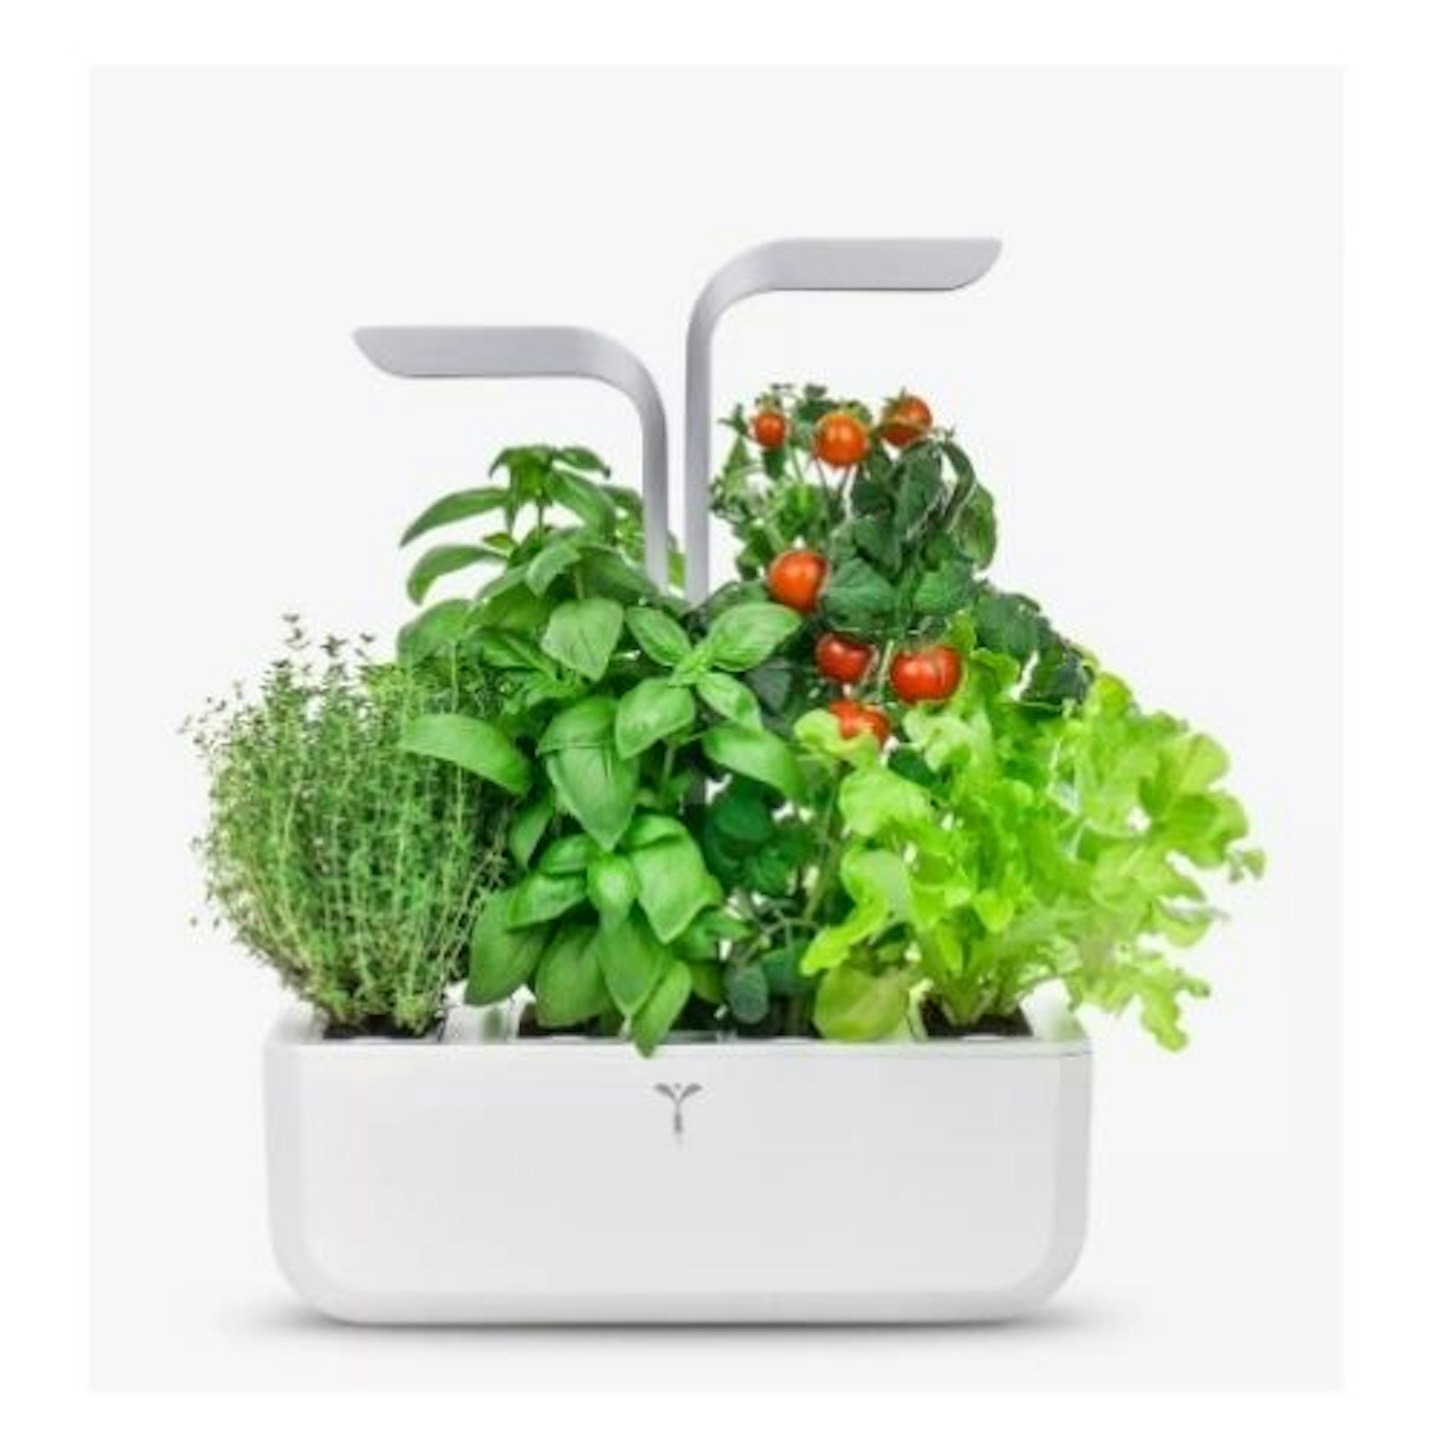 Veritable Indoor Garden Smart Herb and Plant Holder